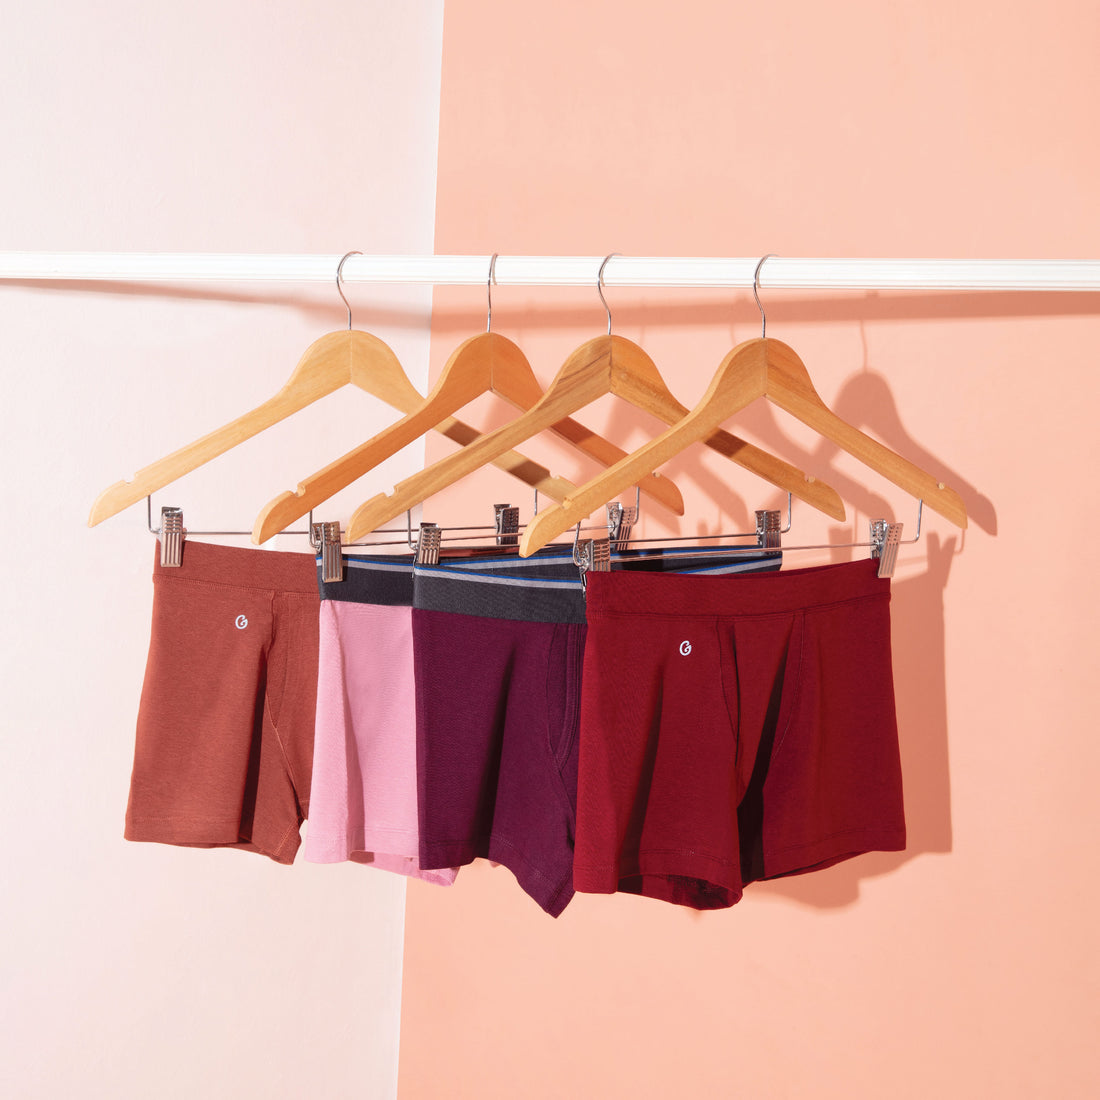 3 Simple Steps to Buy Men's Underwear